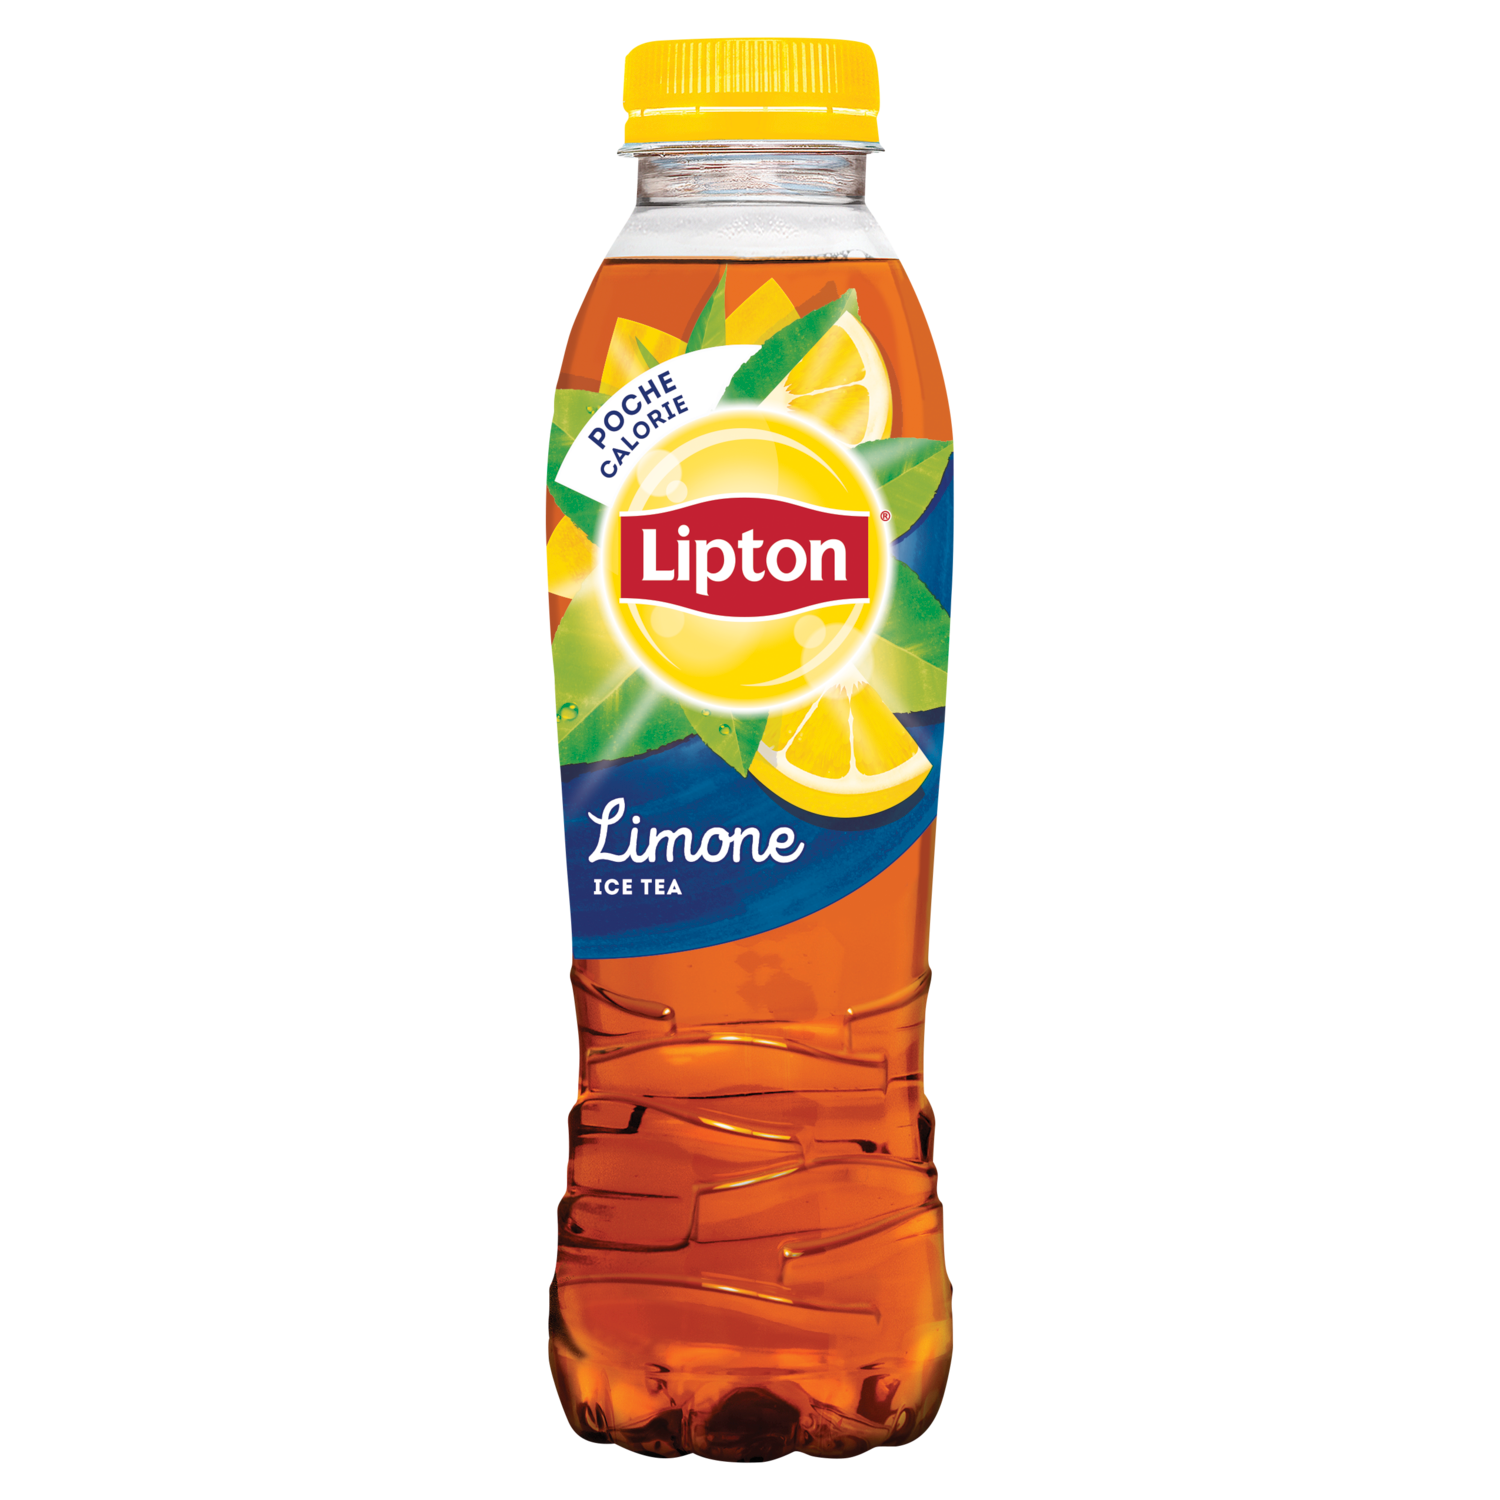 Картинки липтона. Чай Липтон 0.5. Липтон 0,5 лимон. Липтон на белом фоне. Липтон 2007.